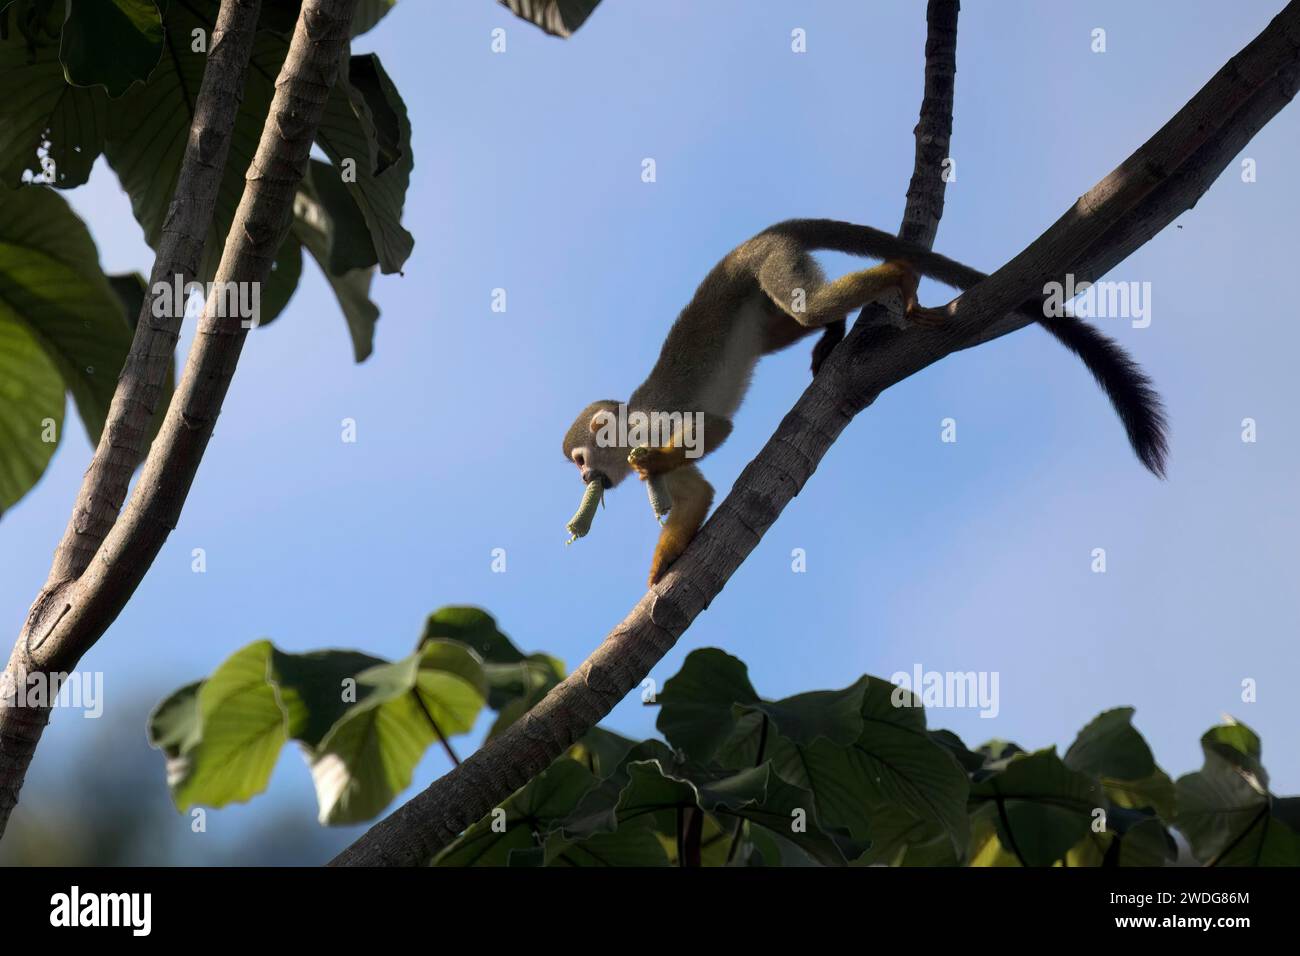 Singe écureuil de Collin, Saimiri collinsii, mangeant un fruit, bassin amazonien, Brésil Banque D'Images